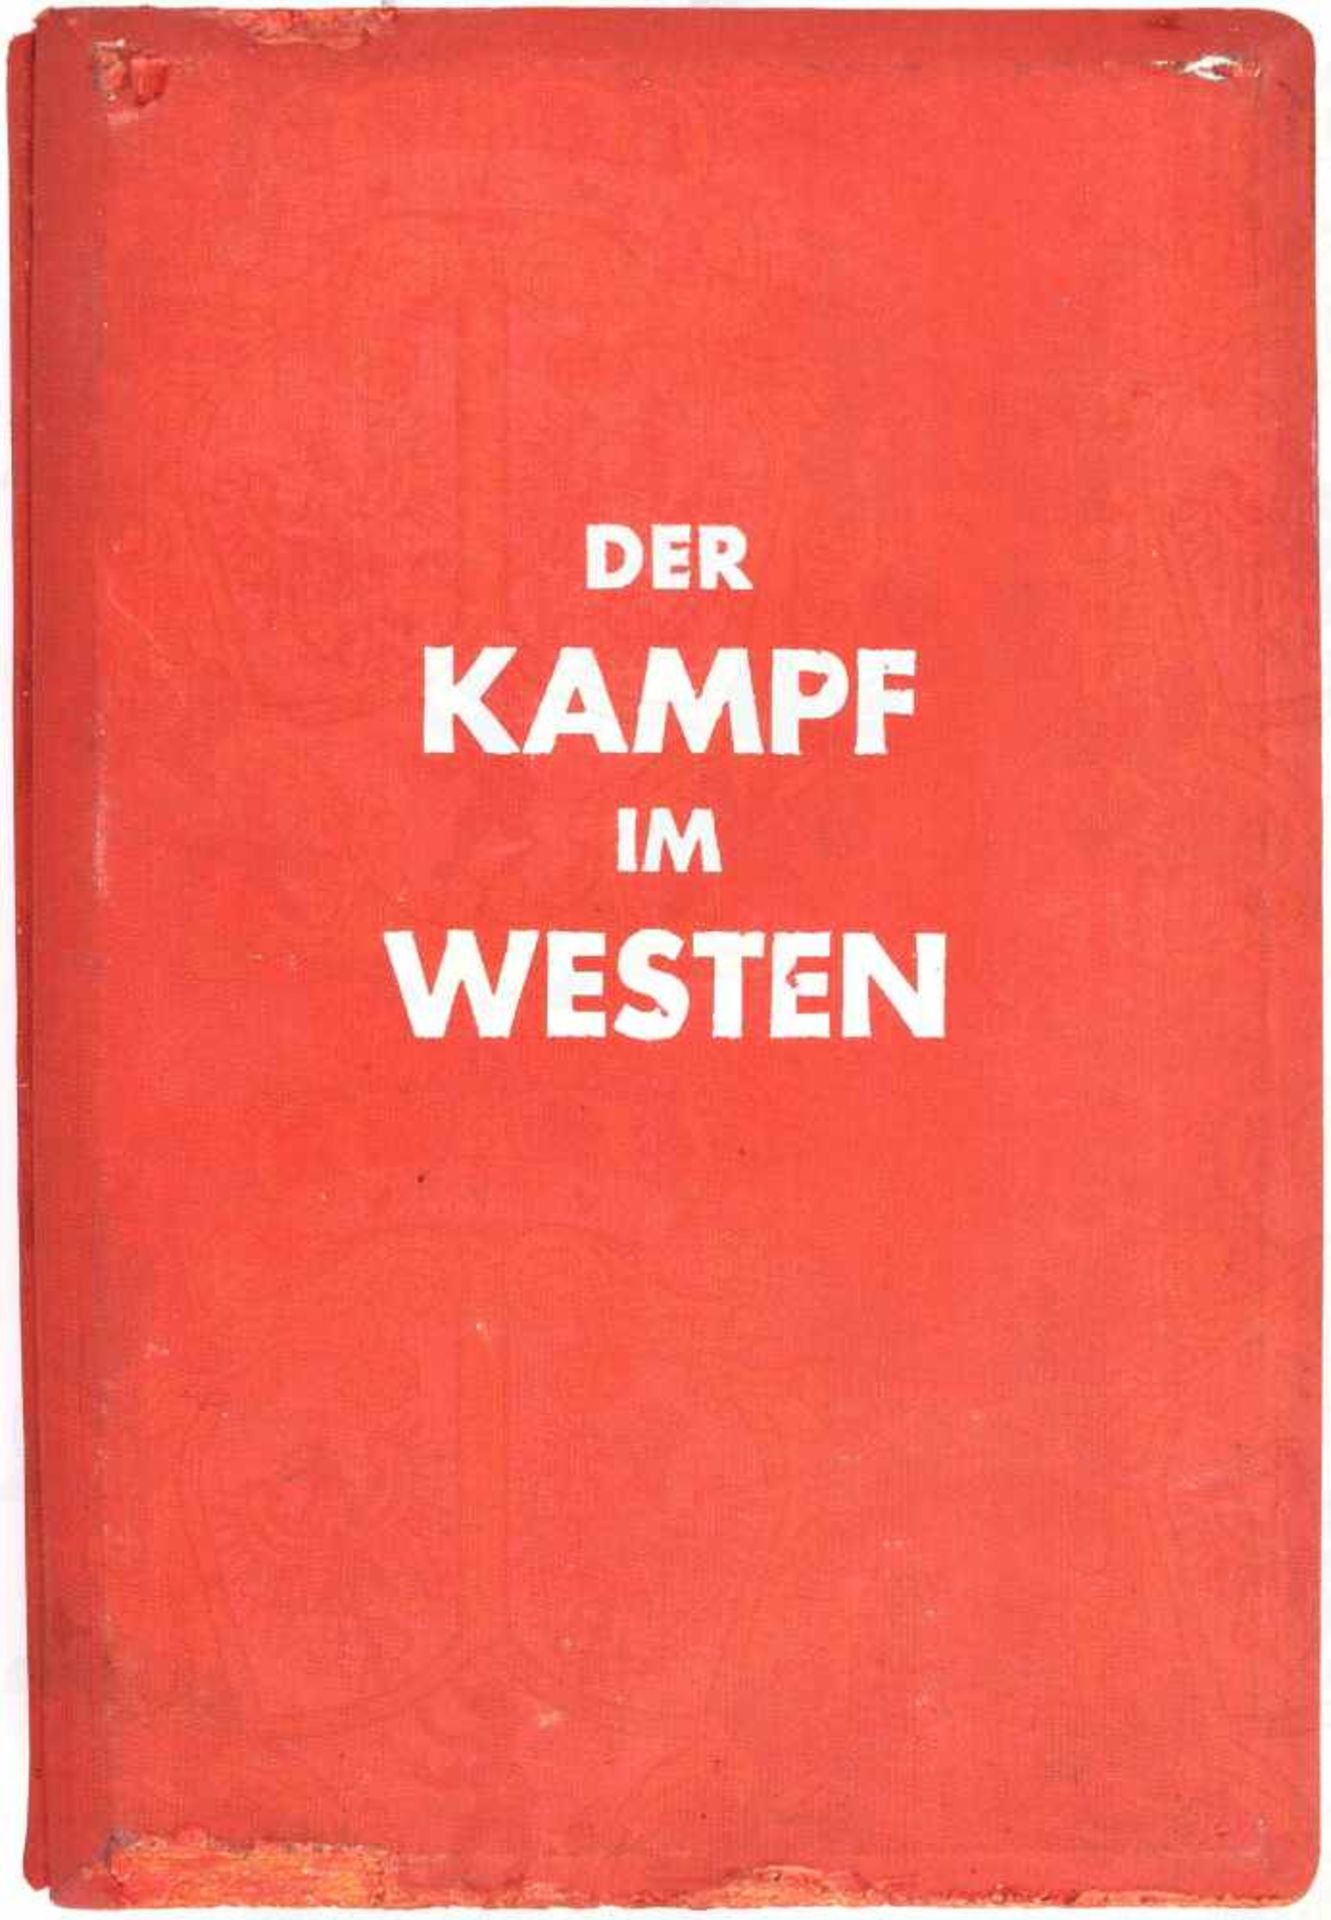 DER KAMPF IM WESTEN, Schönstein-Verlag, München 1940, 80 S., kpl. m. 100 Raumbildern u. 8 farbigen